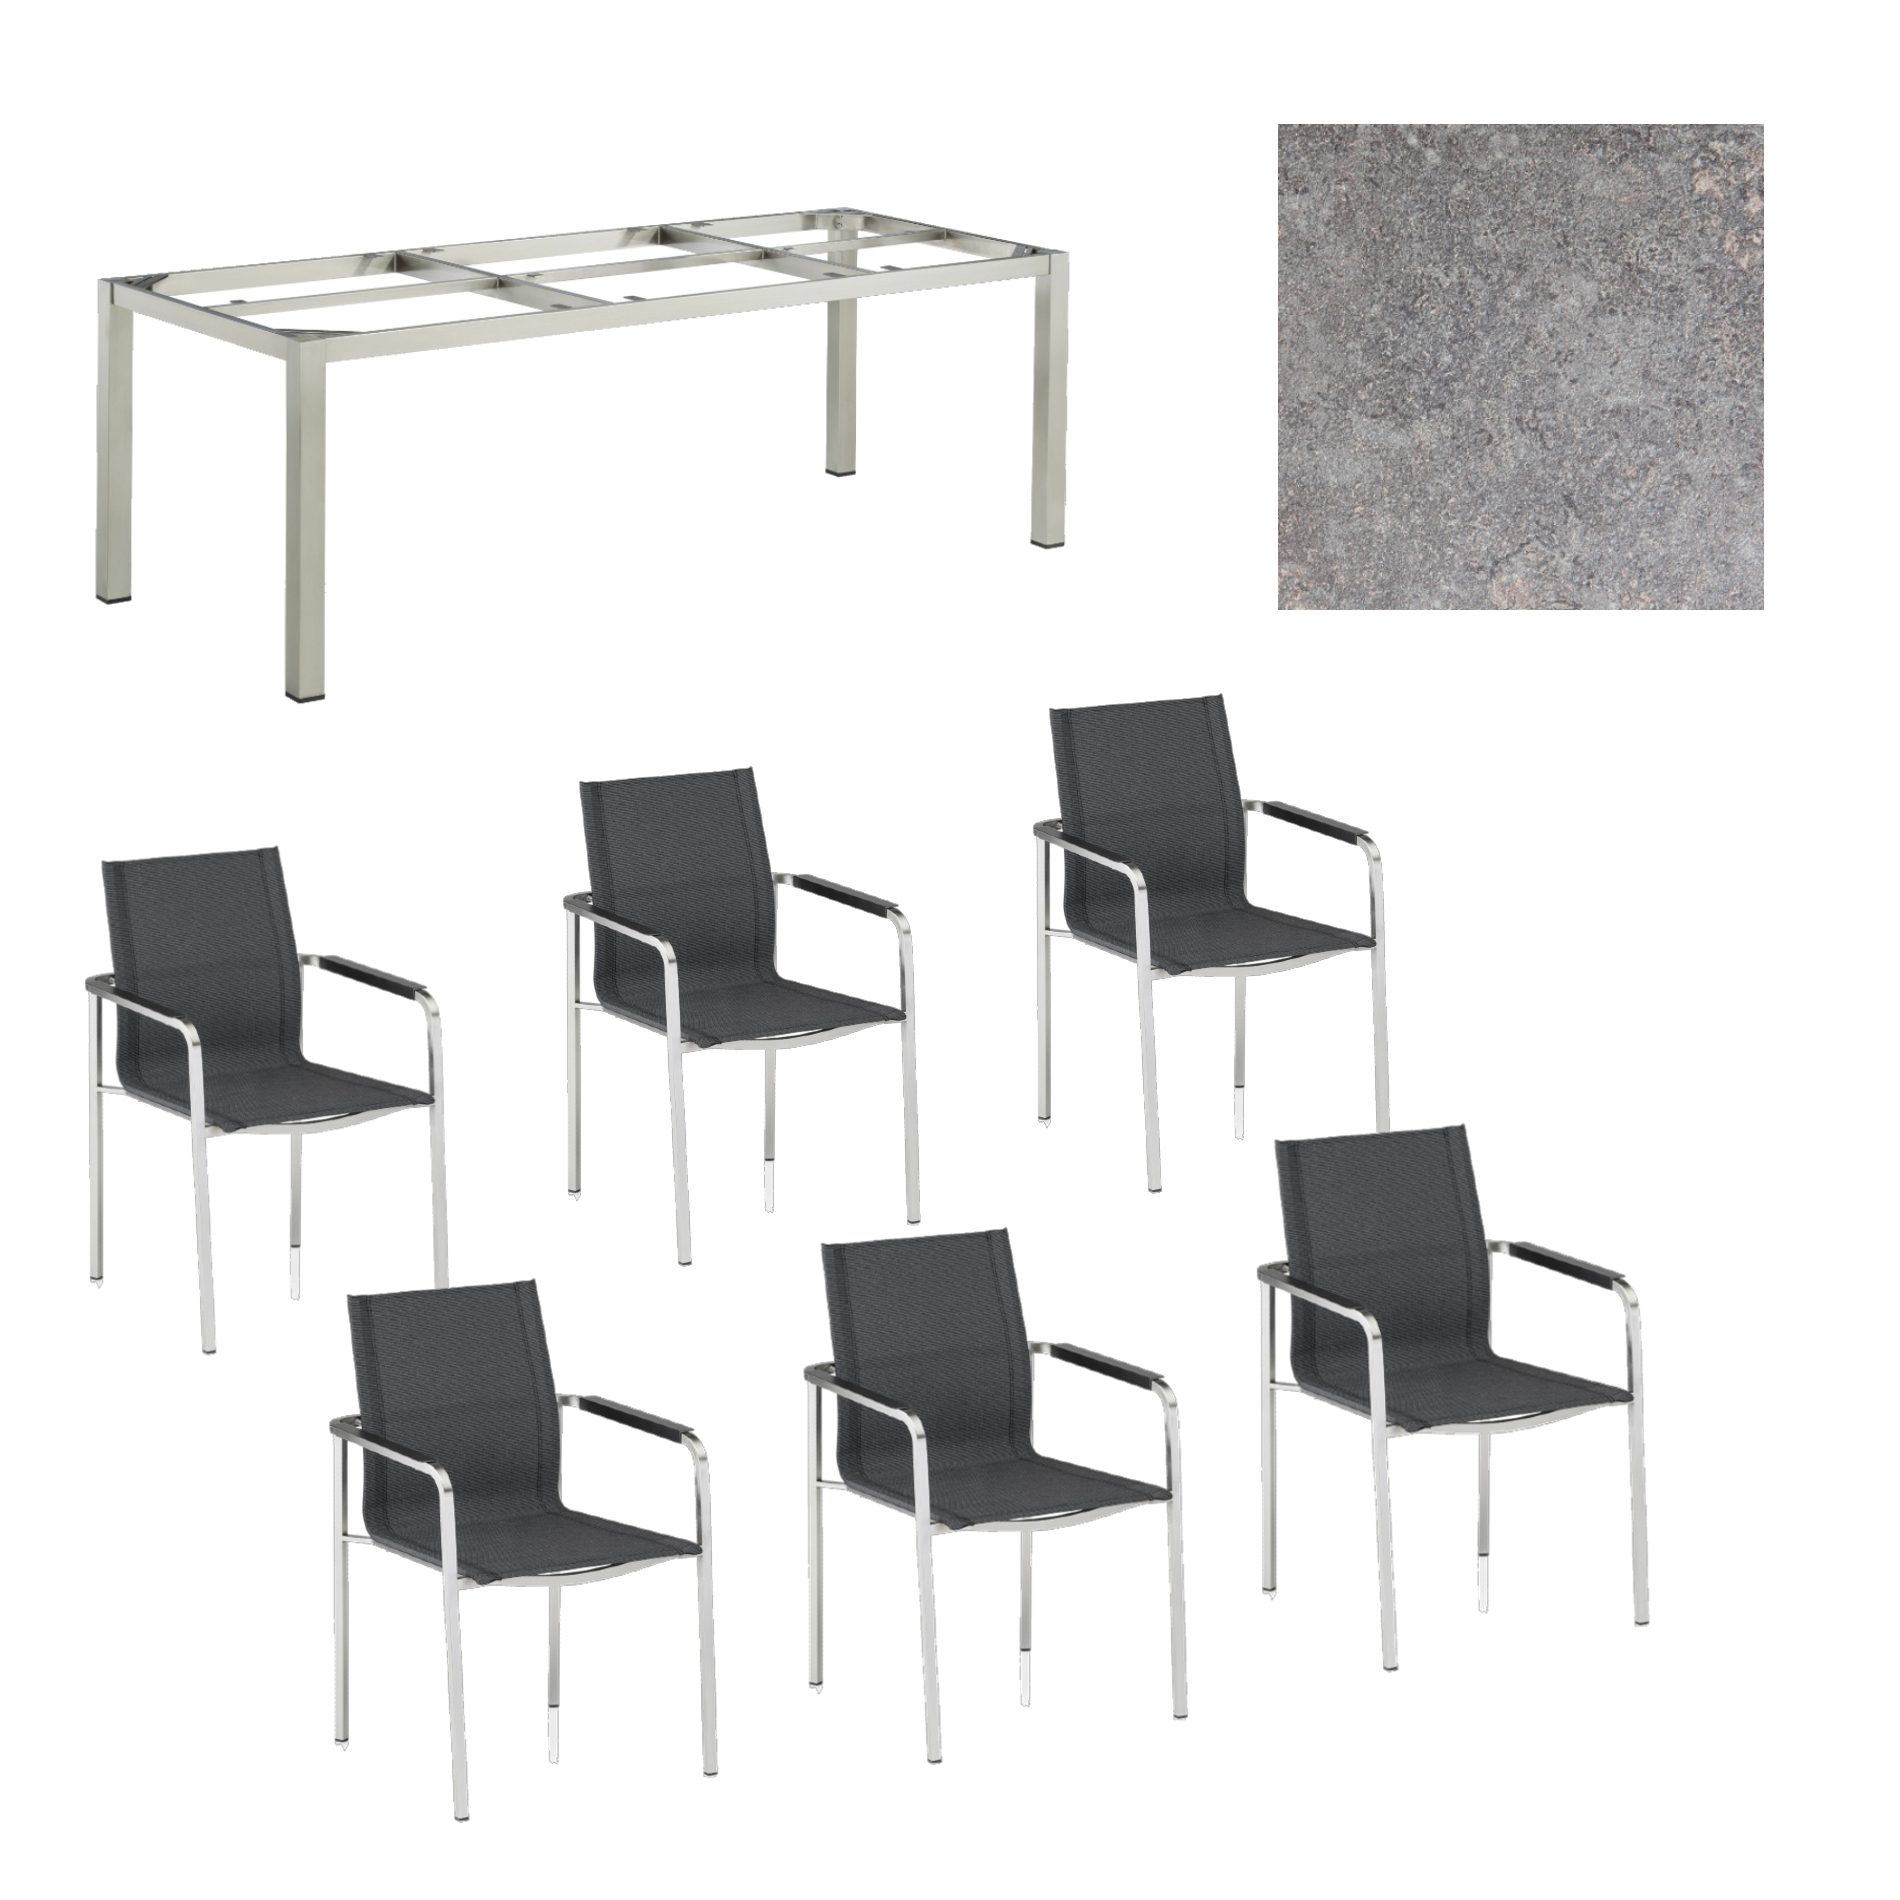 Kettler Gartenmöbel-Set mit "Feel" Stapelstuhl und "Cubic" Tisch, Gestelle Edelstahl, Sitz grau meliert, Tischplatte HPL Kalksandstein